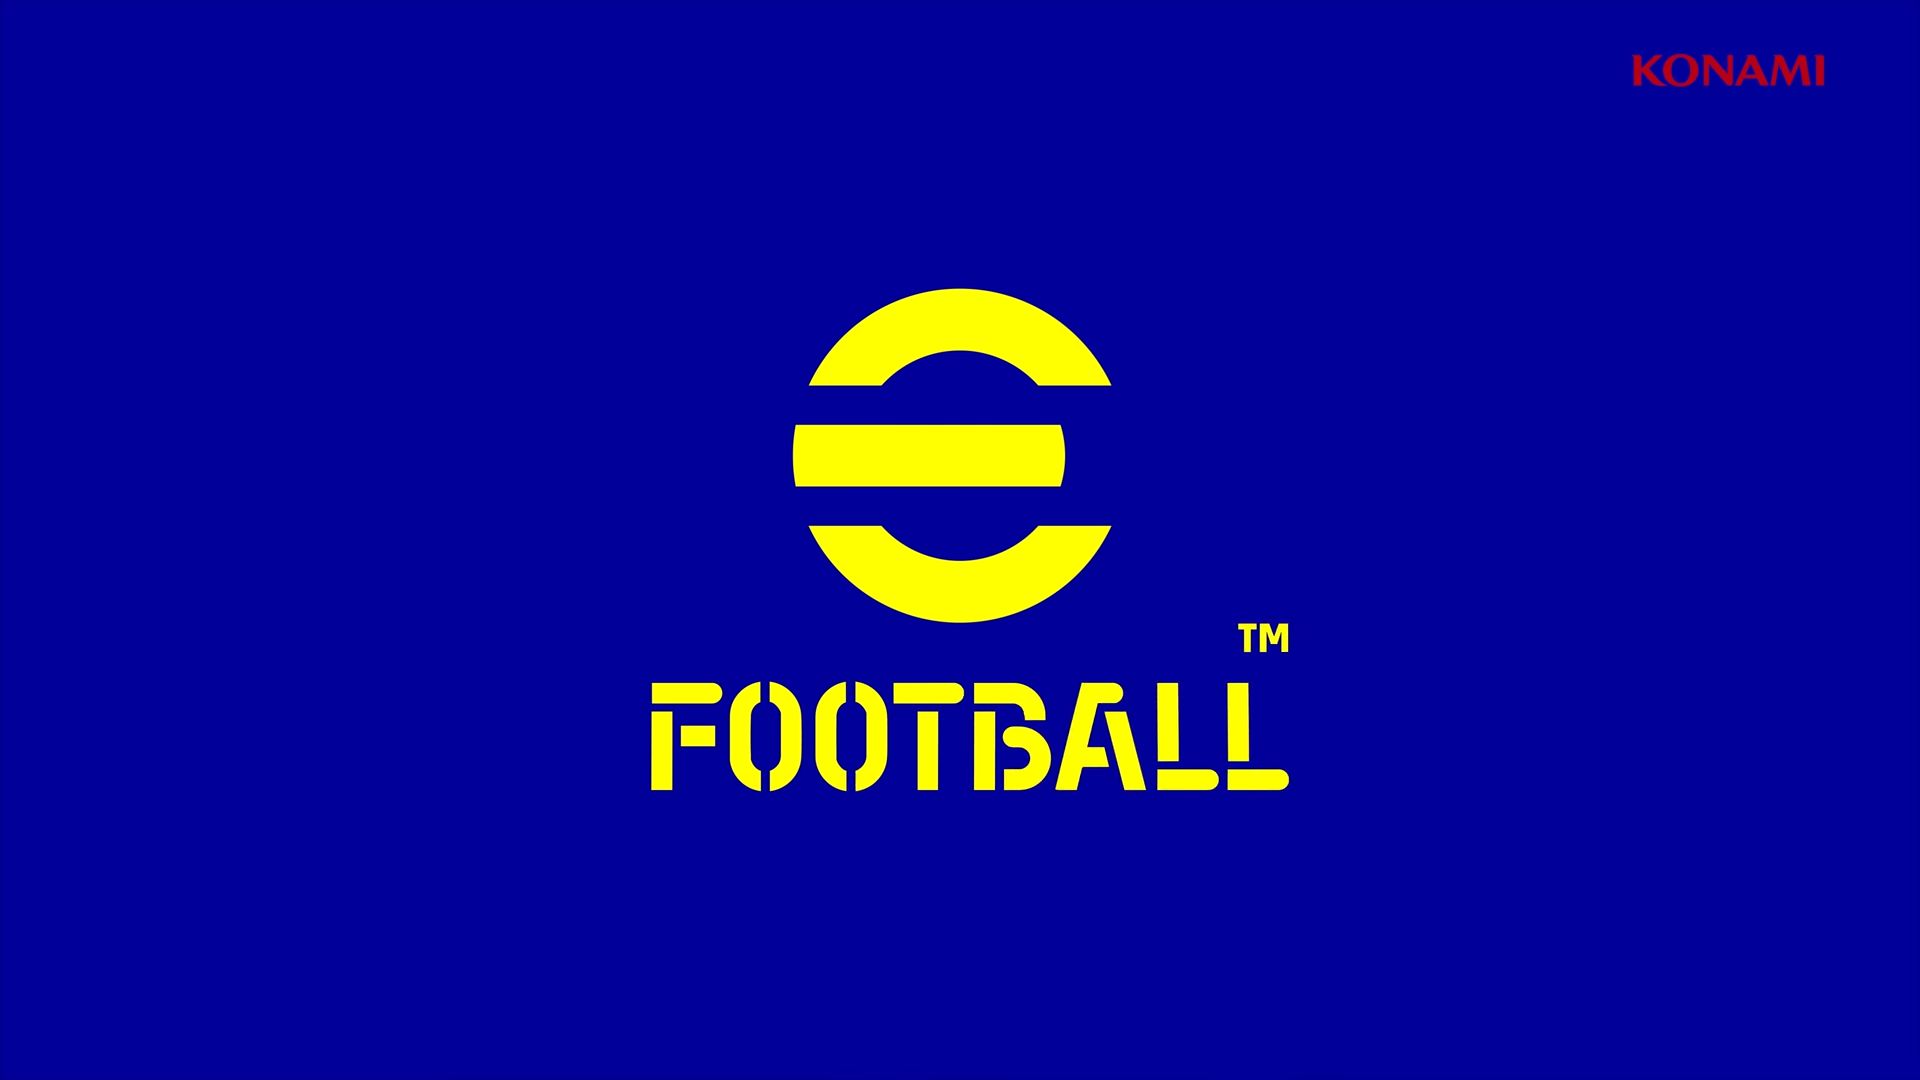 Συνεχίζεται το «μαρτύριο» της KONAMI με το eFootball: Επιστρέφει χρήματα λόγω καθυστέρησης στο μεγάλο update